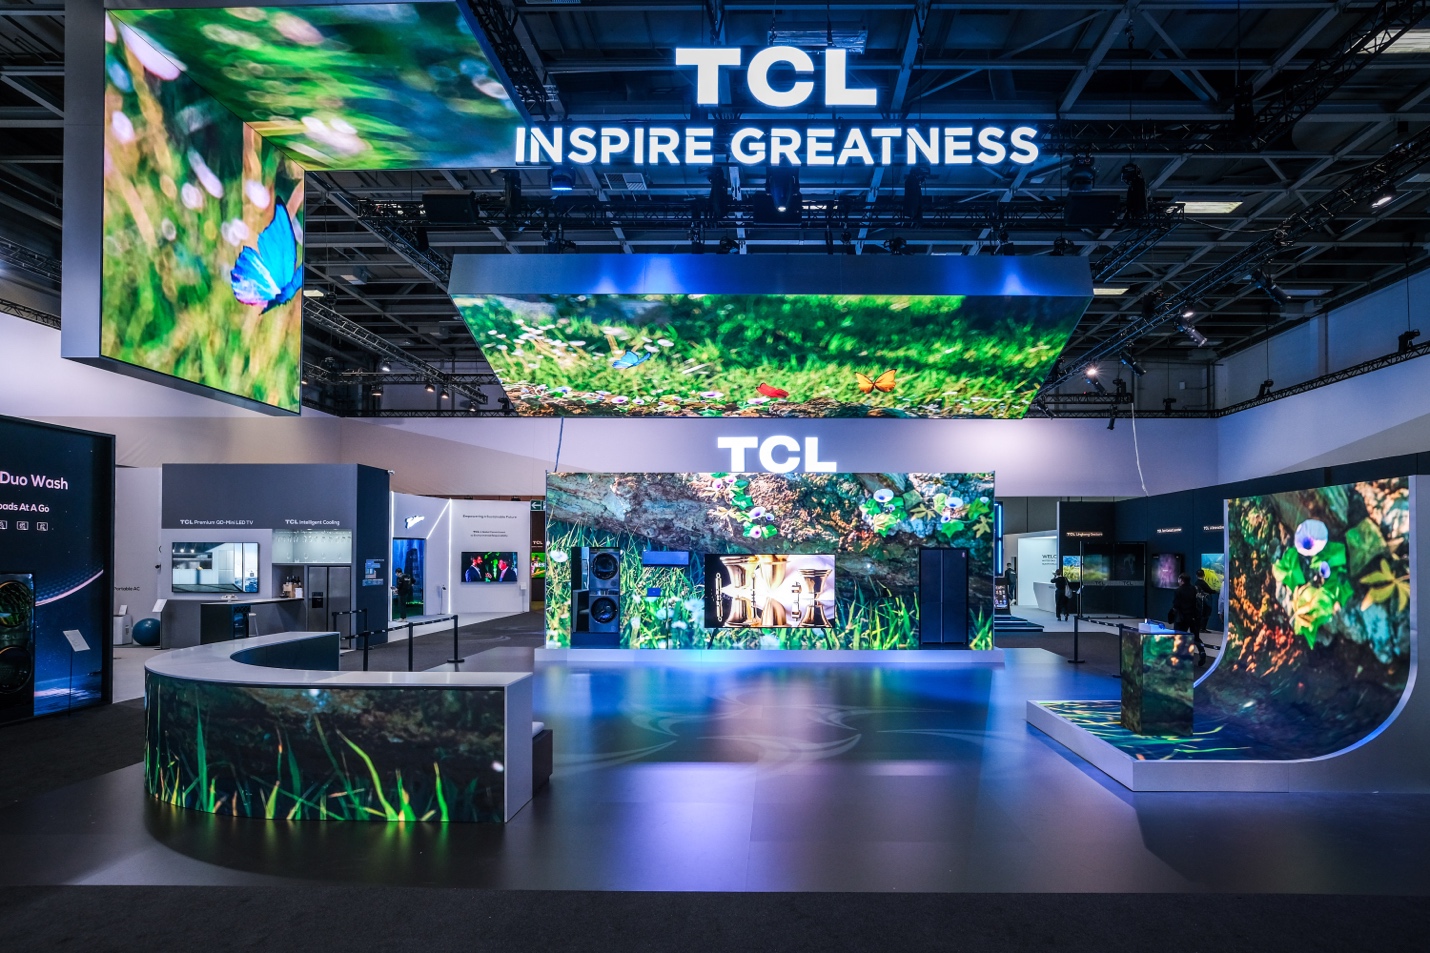 TCL đạt 3 giải thưởng về nghe nhìn danh giá - Củng cố vị trí trong ngành công nghệ màn hình - Ảnh 5.